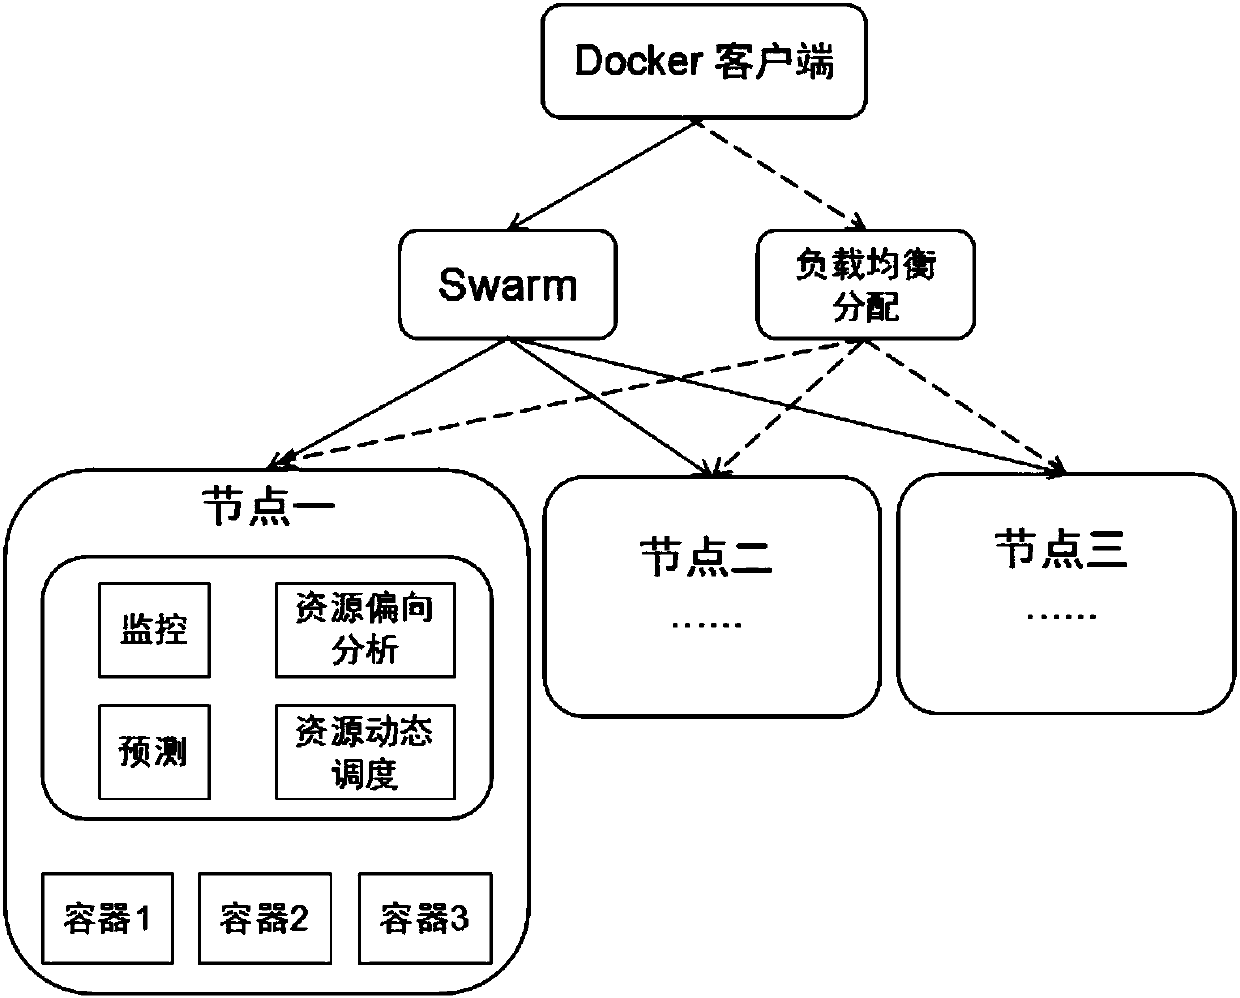 Docker Swarm cluster resource scheduling optimization method based on load prediction